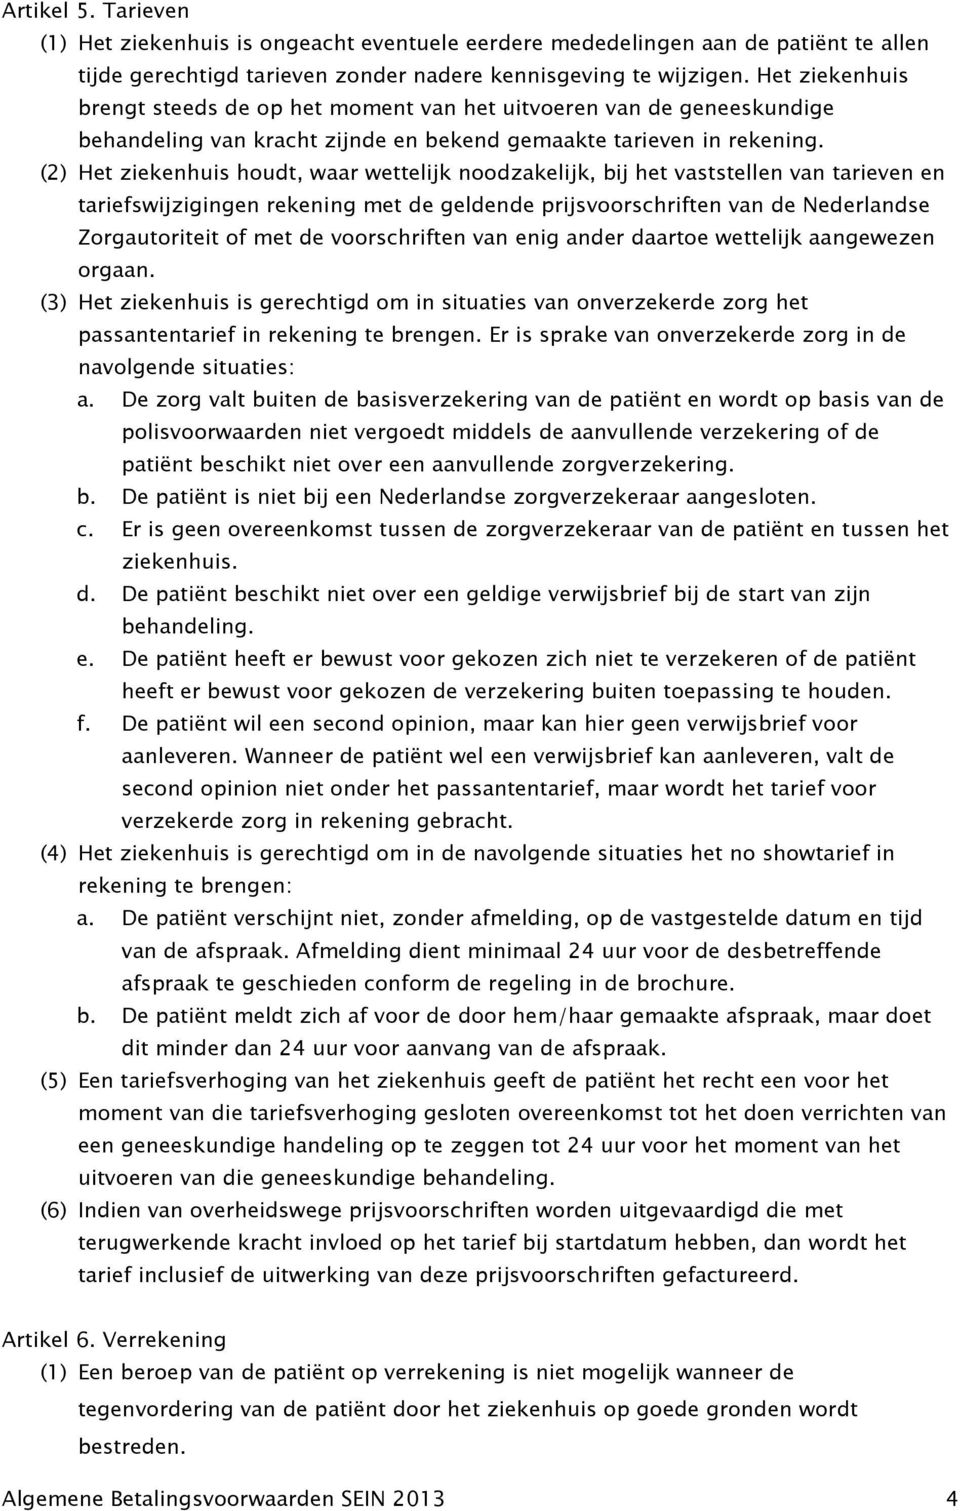 (2) Het ziekenhuis houdt, waar wettelijk noodzakelijk, bij het vaststellen van tarieven en tariefswijzigingen rekening met de geldende prijsvoorschriften van de Nederlandse Zorgautoriteit of met de